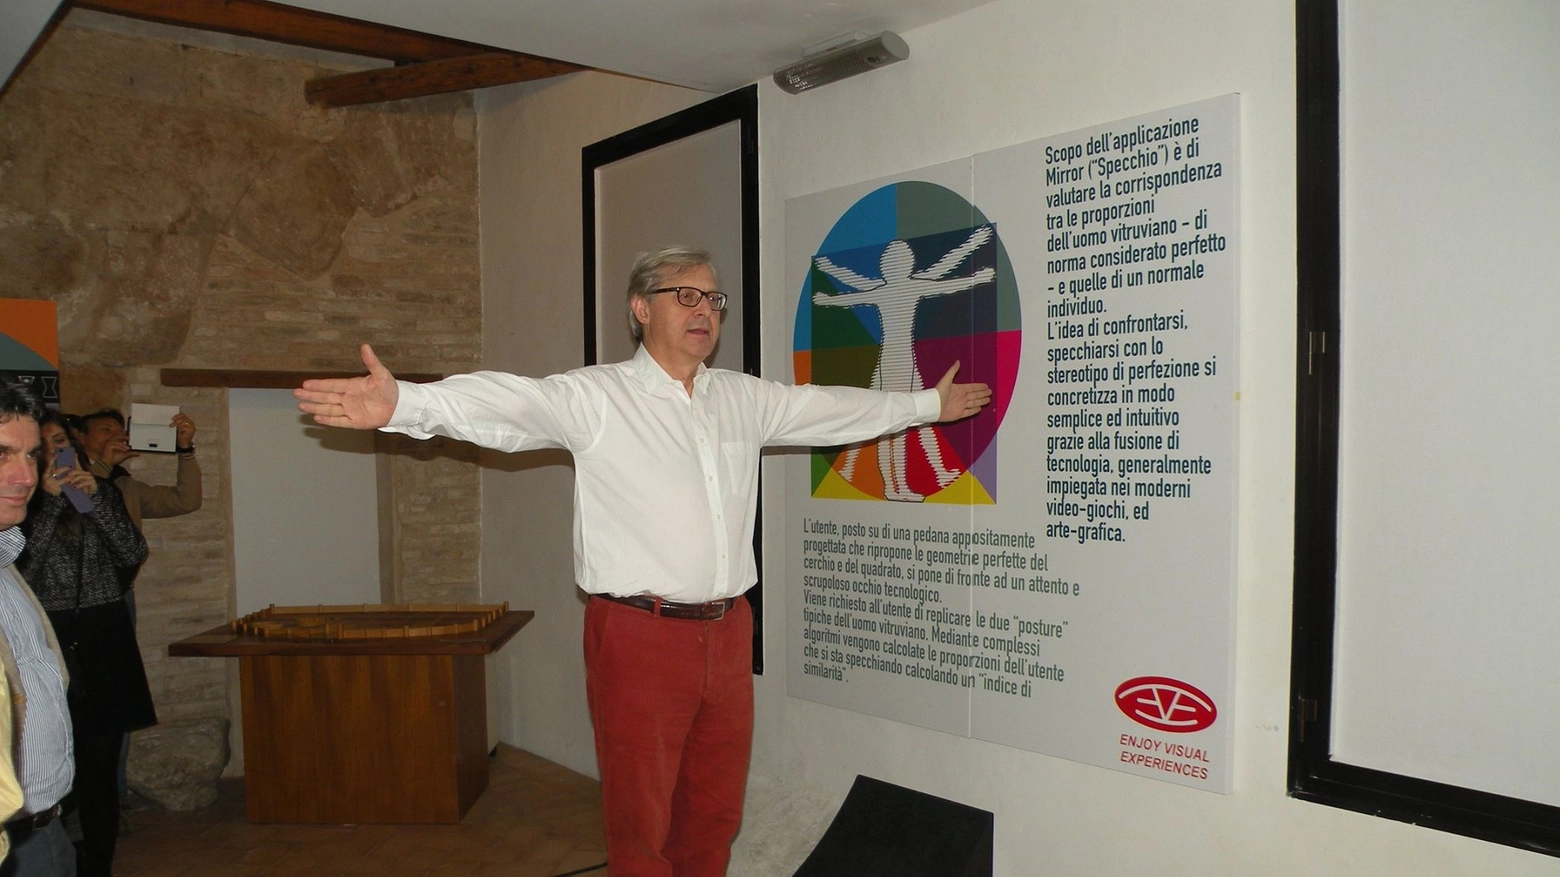 L'esposizione prevede un allestimento temporaneo dal 9 maggio al 15 ottobre 2015 dedicato alle proporzioni del corpo umano presso il Museo Leonardiano. L'evento rientra nell'ambito del progetto “Rinascimento e Rinascita".